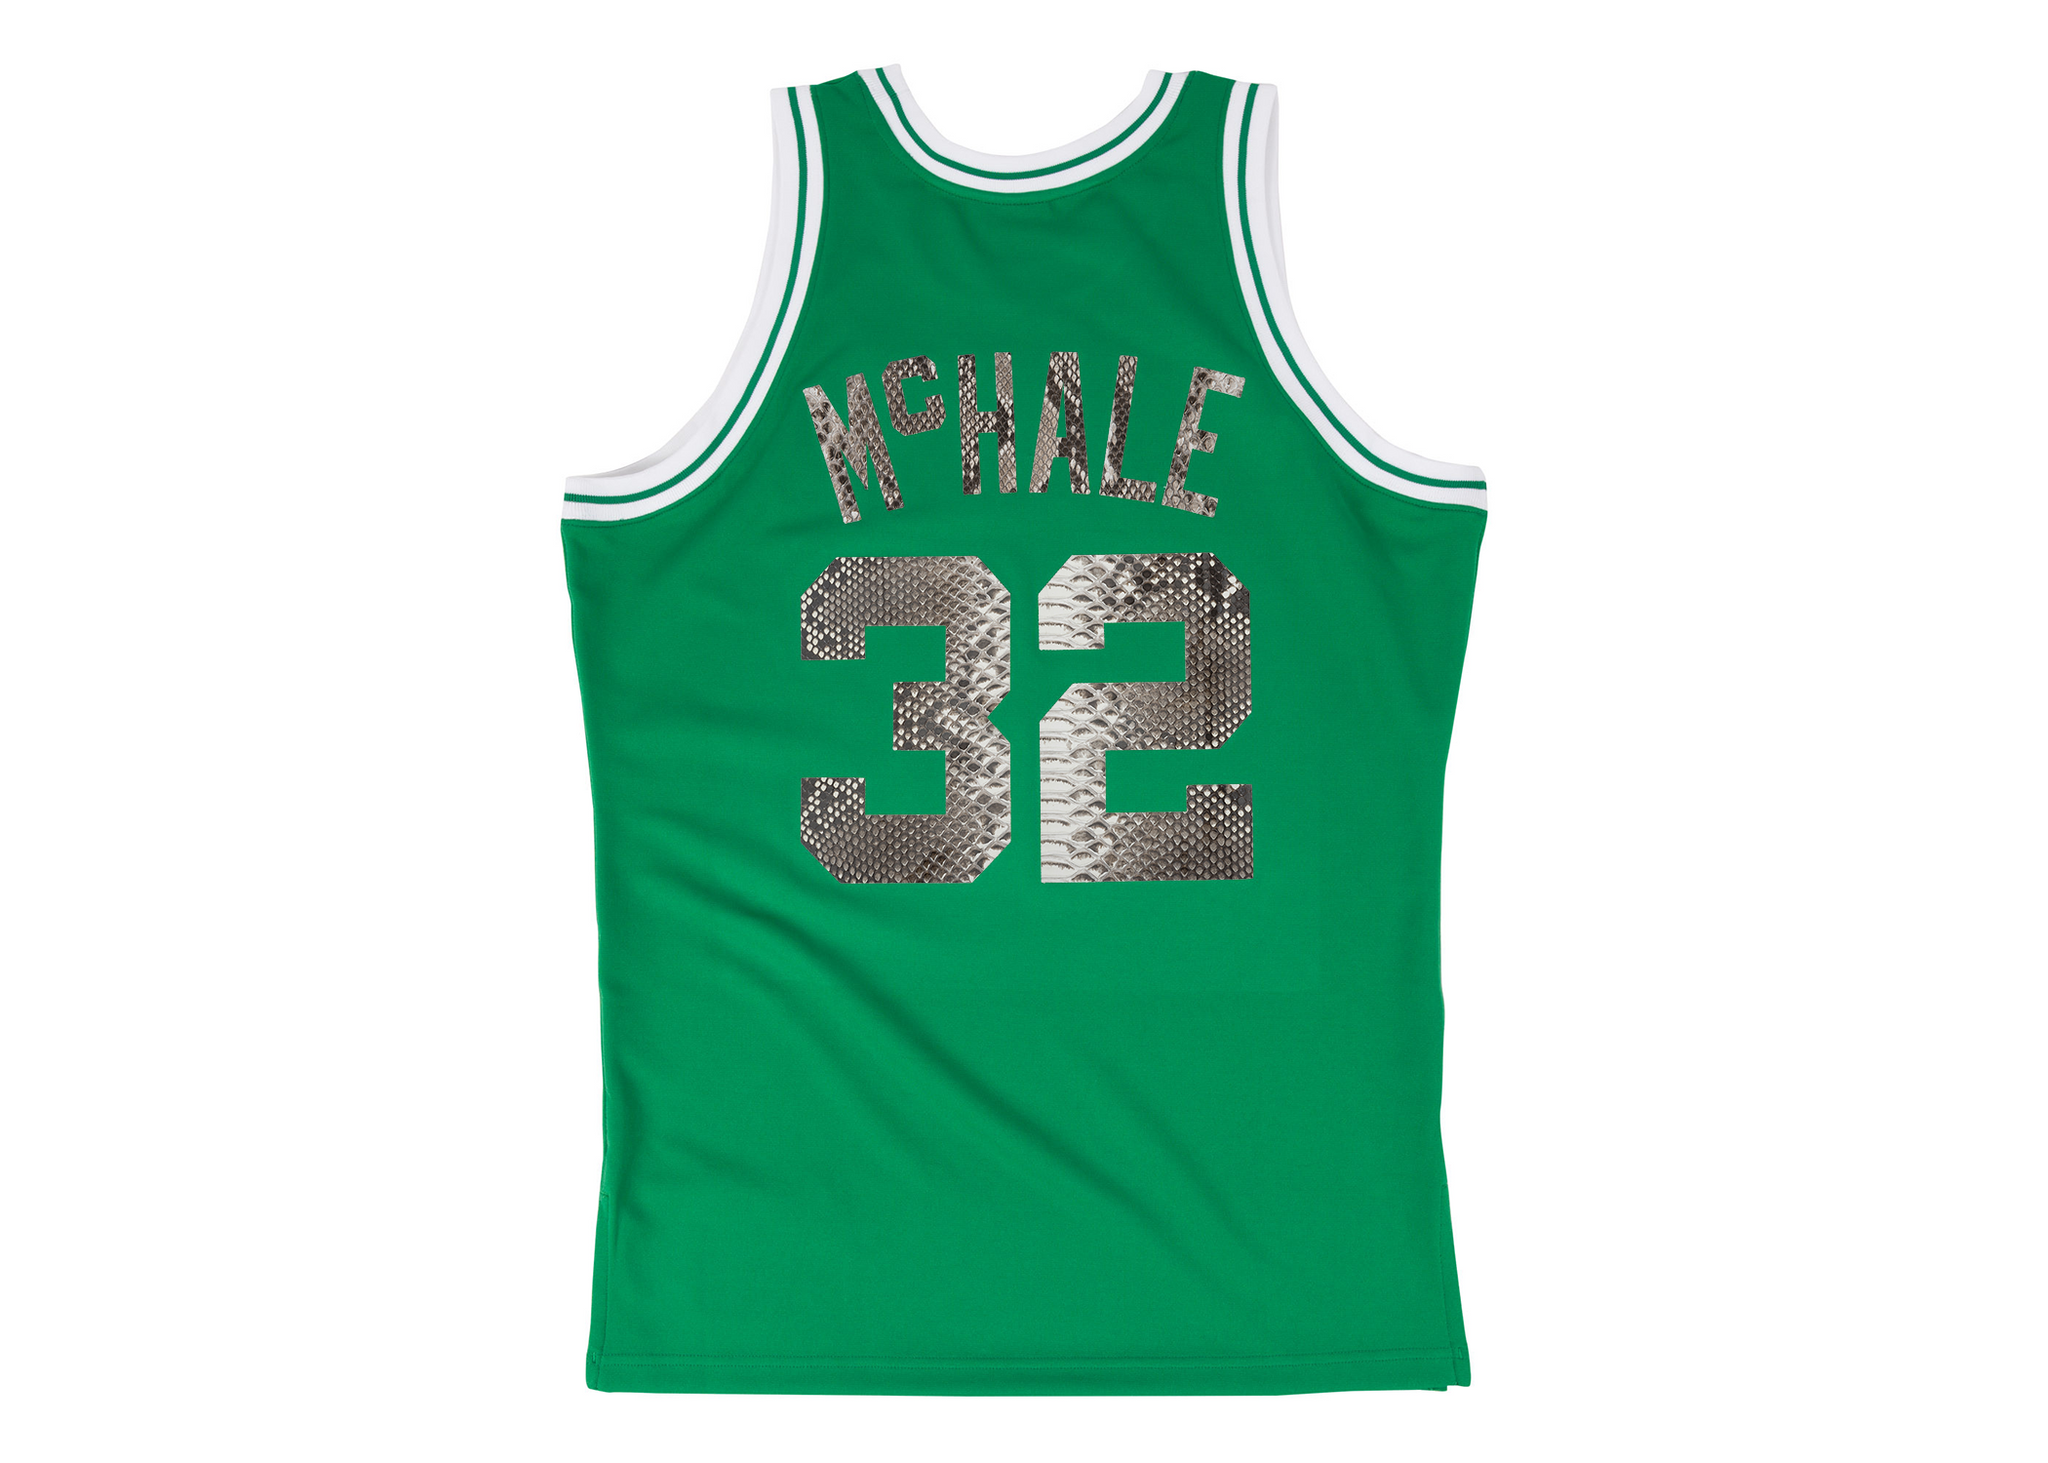 Mitchell & Ness Kevin McHale 1987-1988 Boston Celtics Python Jersey